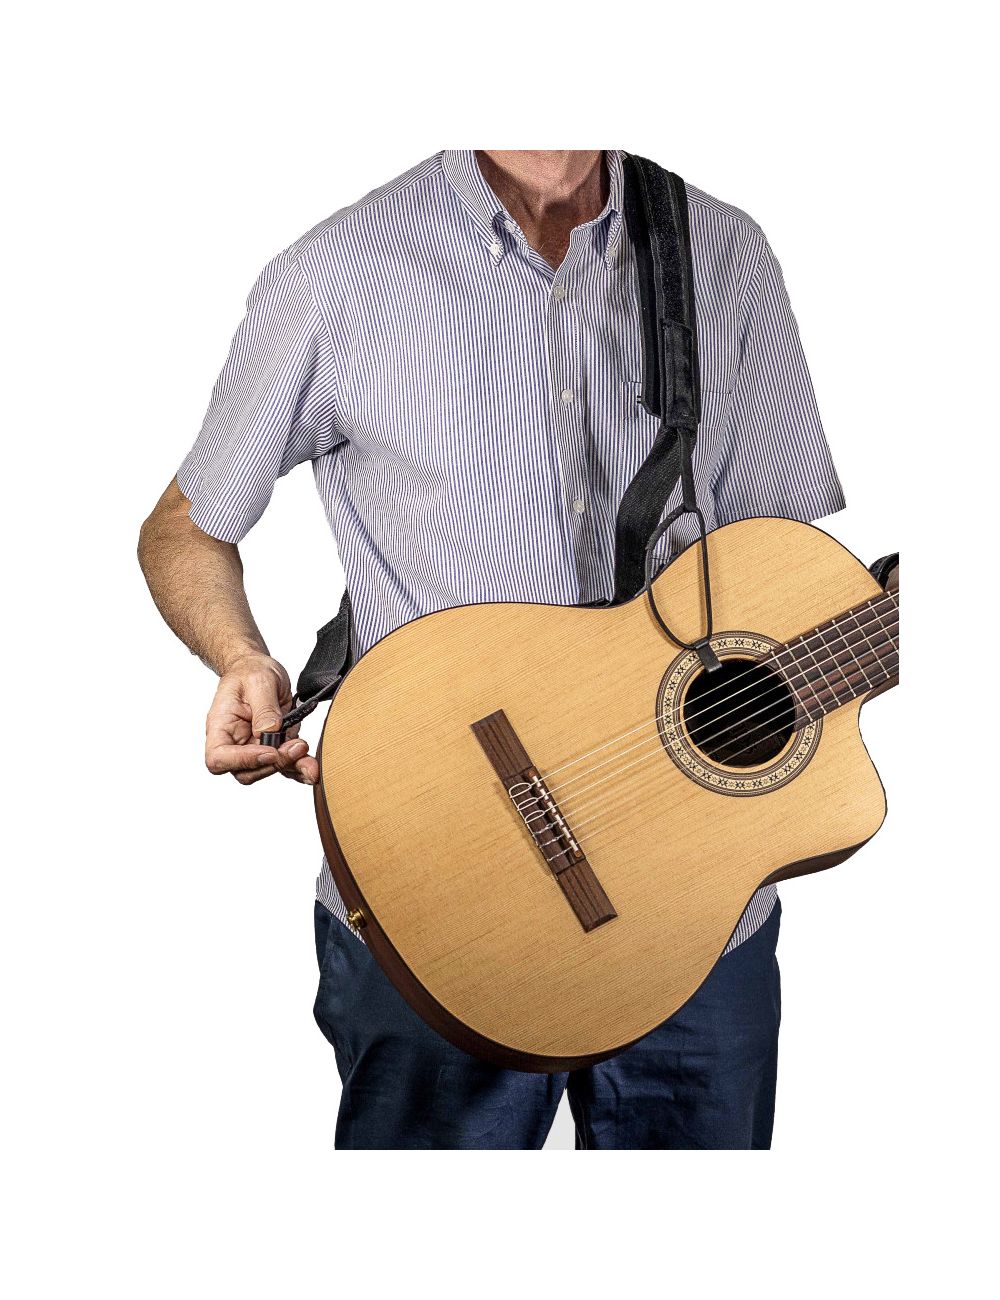 https://www.guitarfromspain.com/10112-large_default/luthier-strap-original-sangle-pour-guitare-classique-et-flamenco.jpg